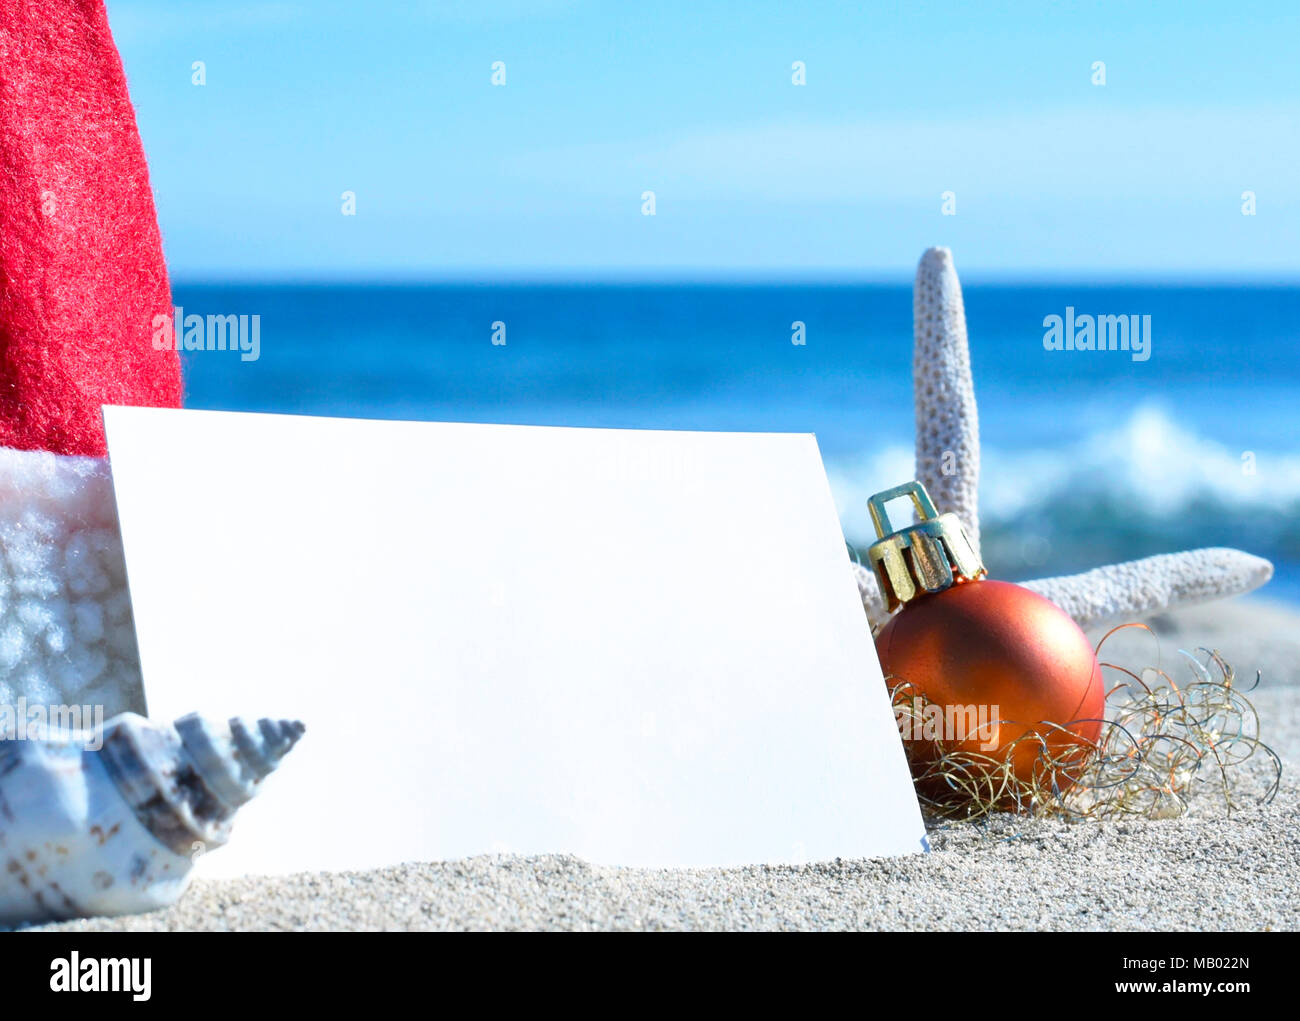 Carte de vœux de Noël et de décoration de Noël sur la plage. Scène de plage avec des étoiles de mer, coquillages et sable. Christmas Tree ball vierge et carte blanche. Banque D'Images